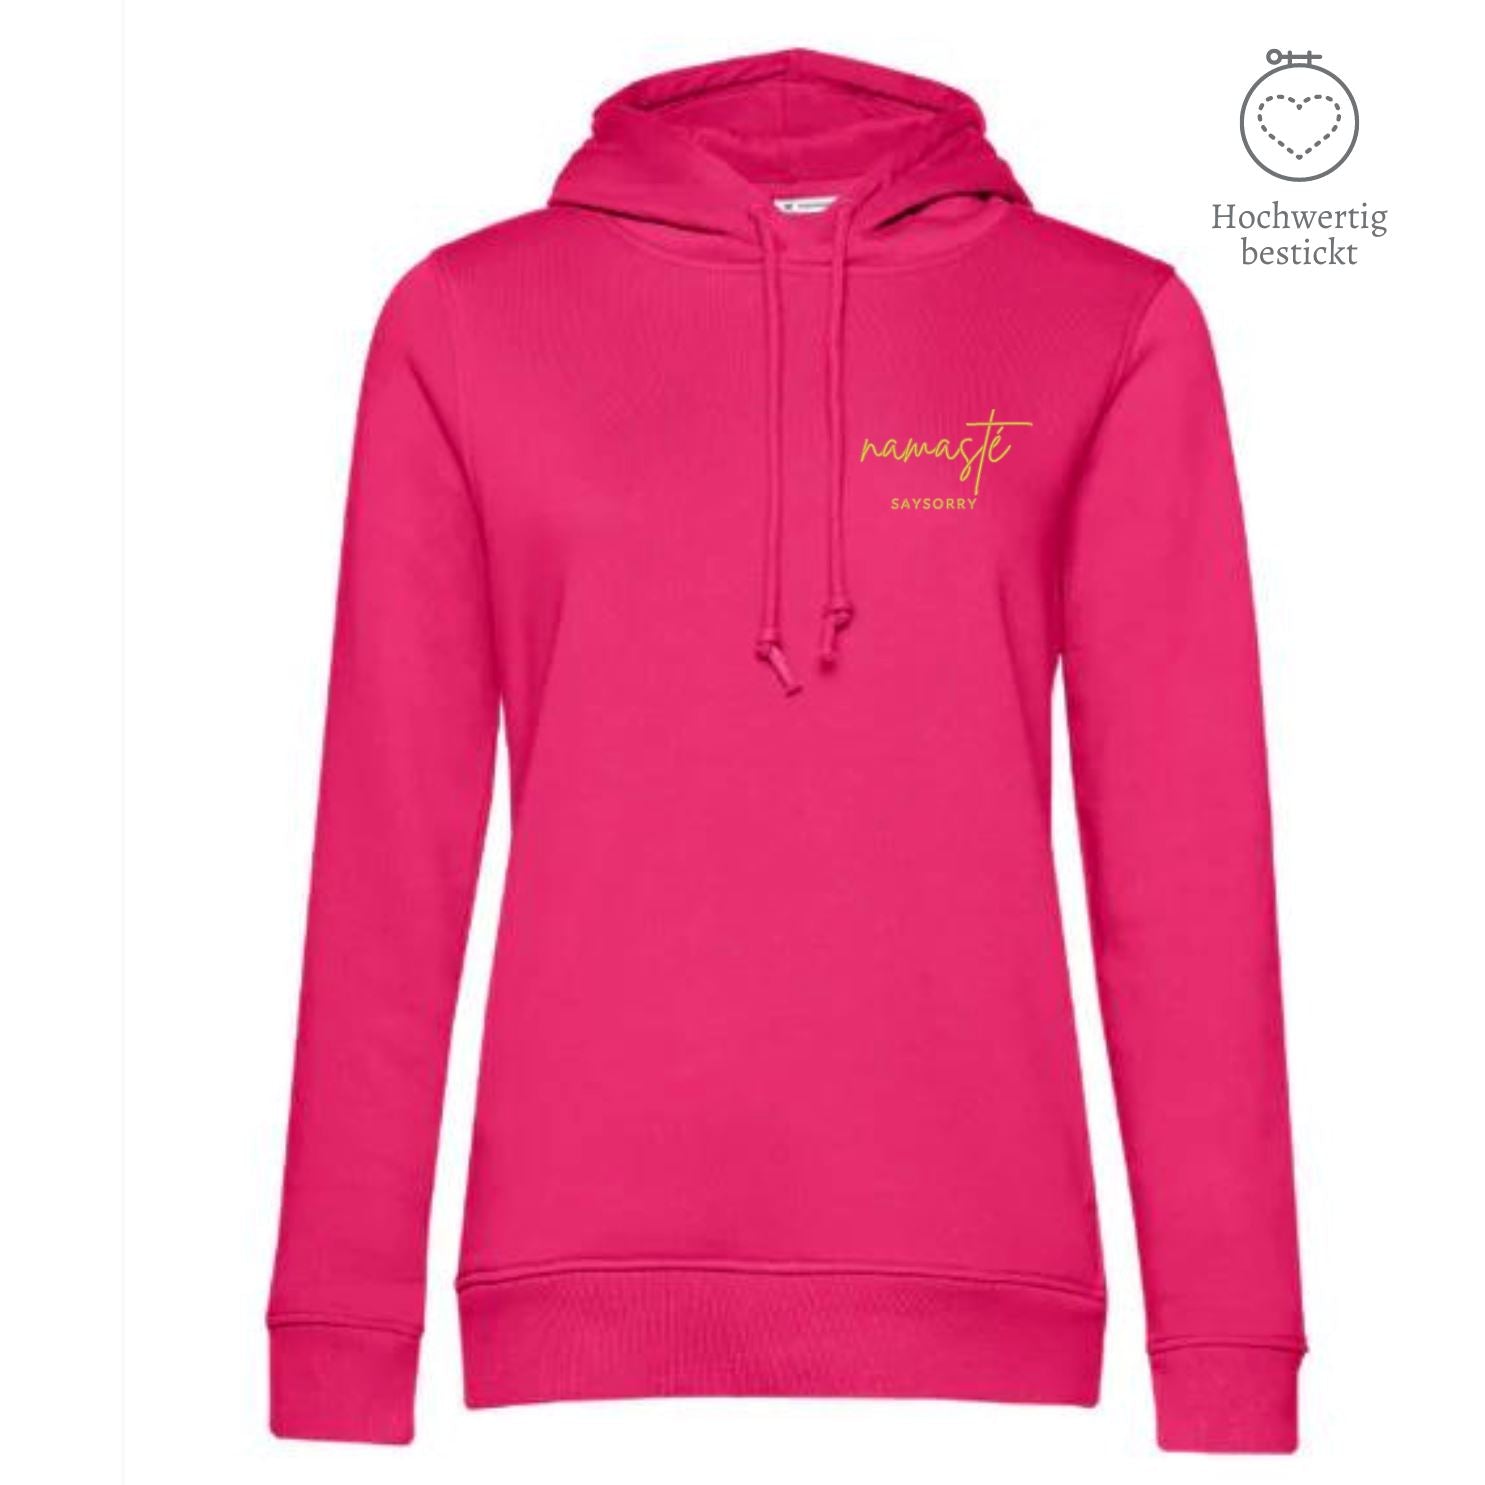 Organic & recycelter Damen Hoodie »Namasté in Gold« hochwertig bestickt Shirt SAYSORRY Magenta Pink XS 